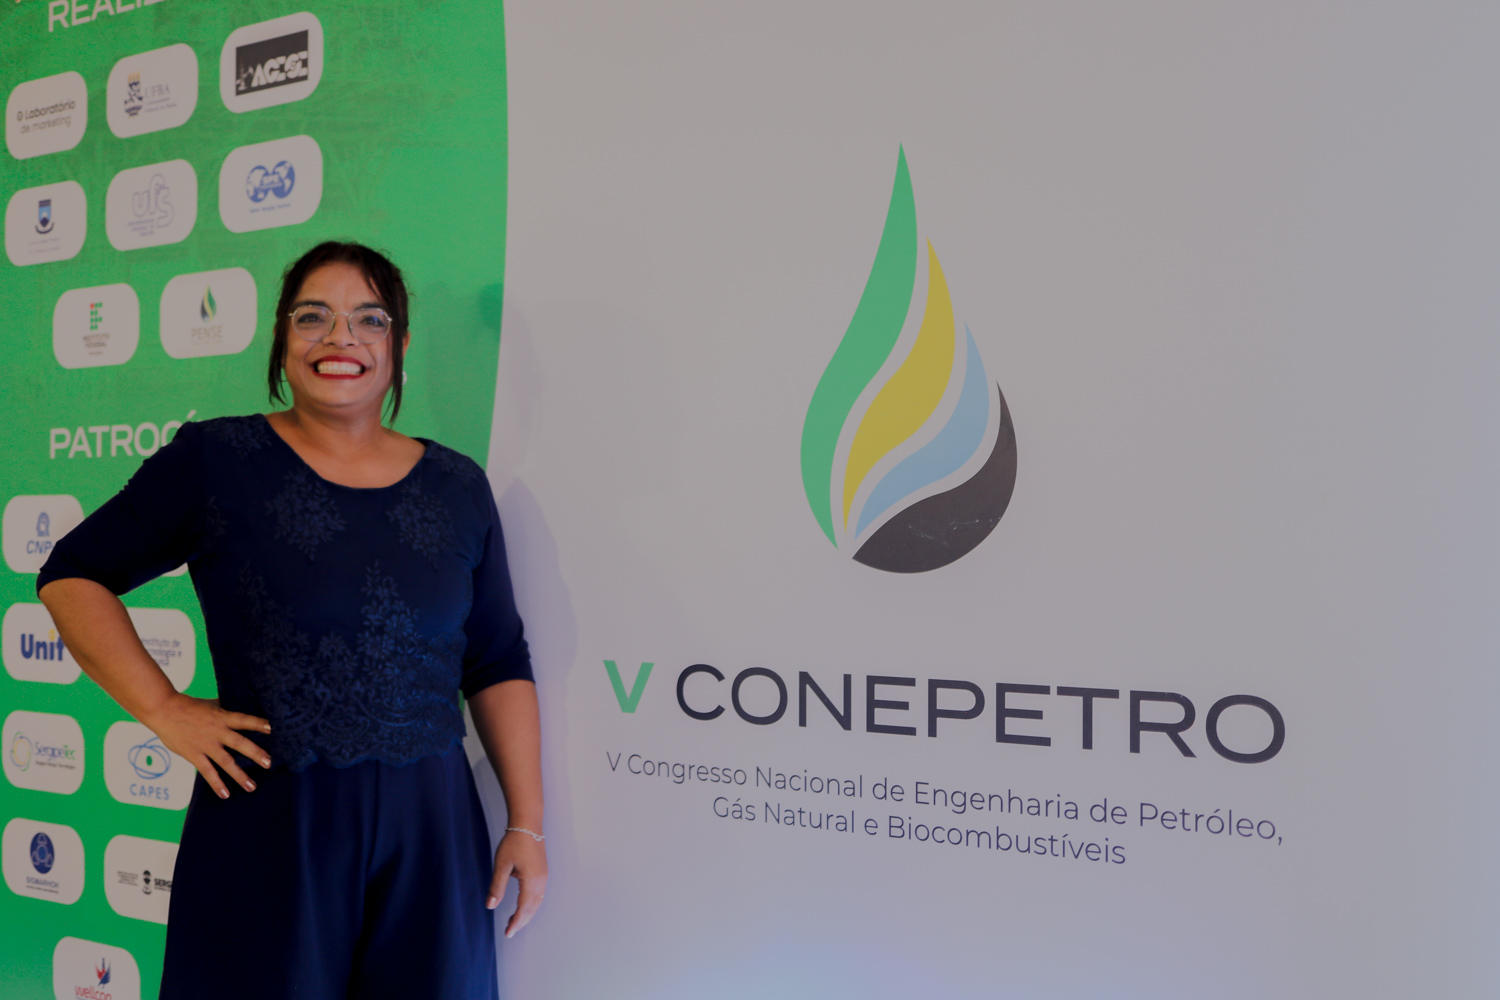 Rosivânia Oliveira é chefe do Departamento de Engenharia de Petróleo e presidente local do Conepetro. (foto: Elisa Lemos/Ascom UFS)